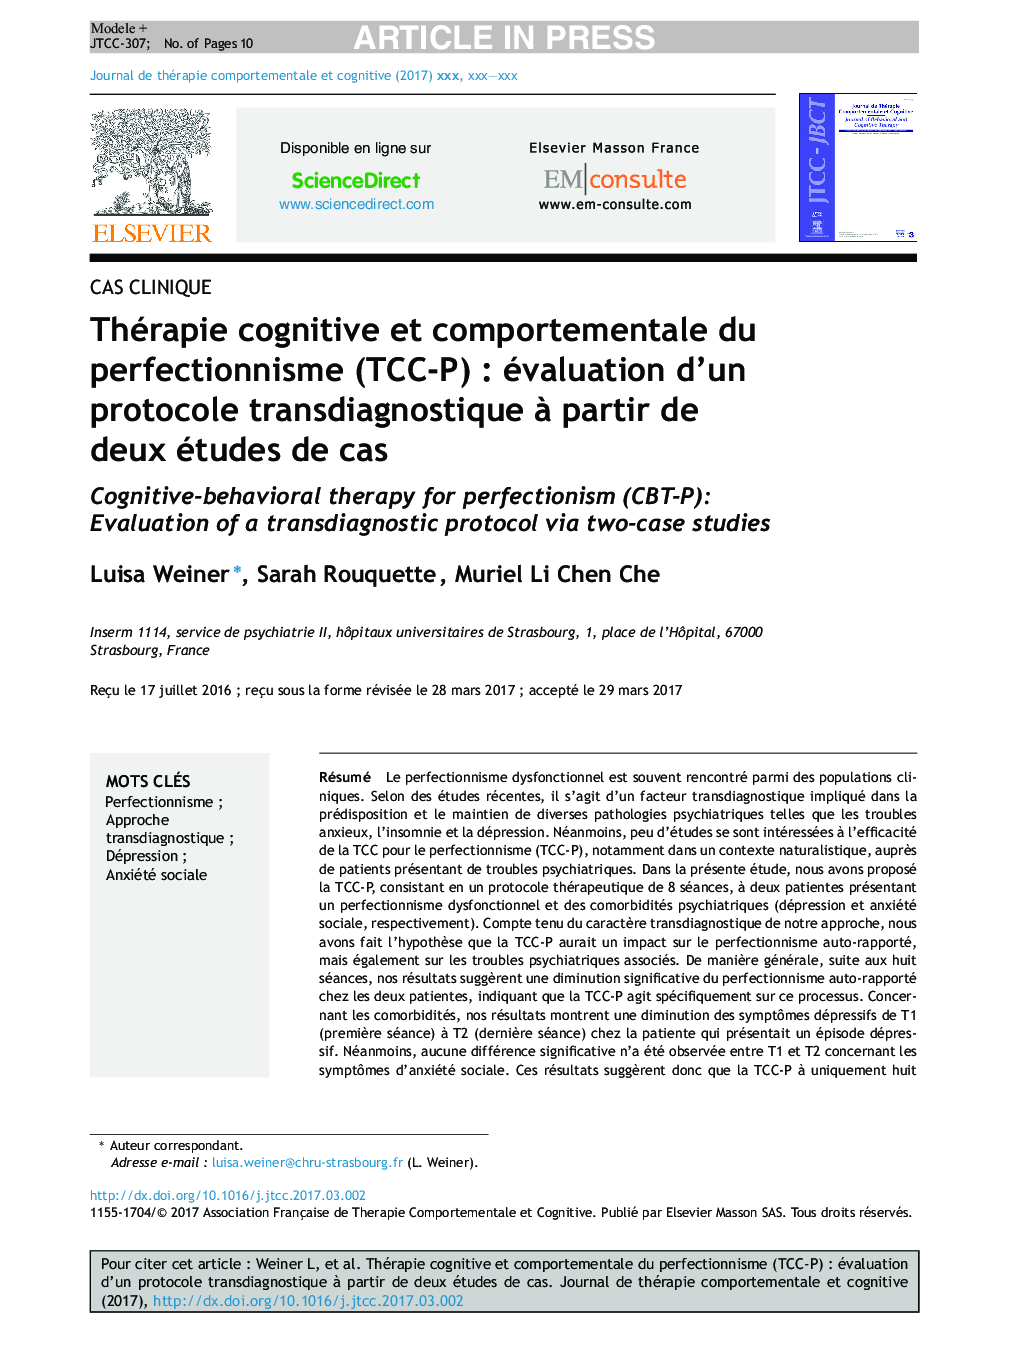 Thérapie cognitive et comportementale du perfectionnisme (TCC-P)Â : évaluation d'un protocole transdiagnostique Ã  partir de deux études de cas